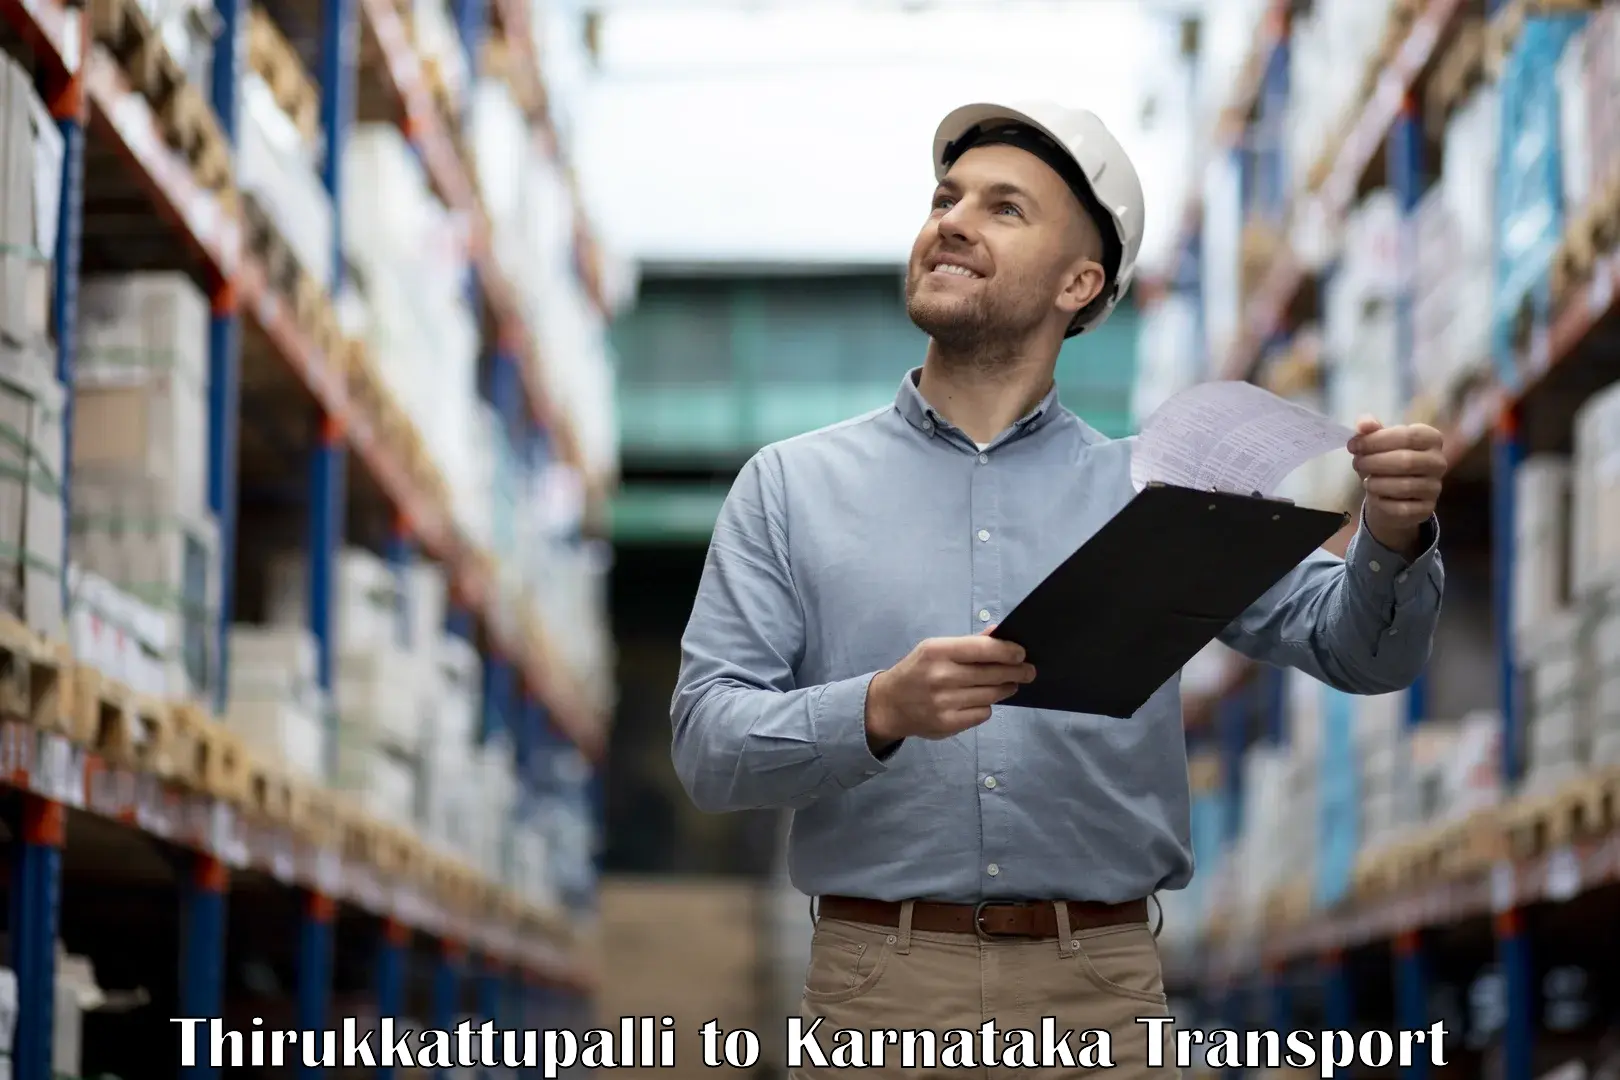 Container transport service Thirukkattupalli to Karnataka